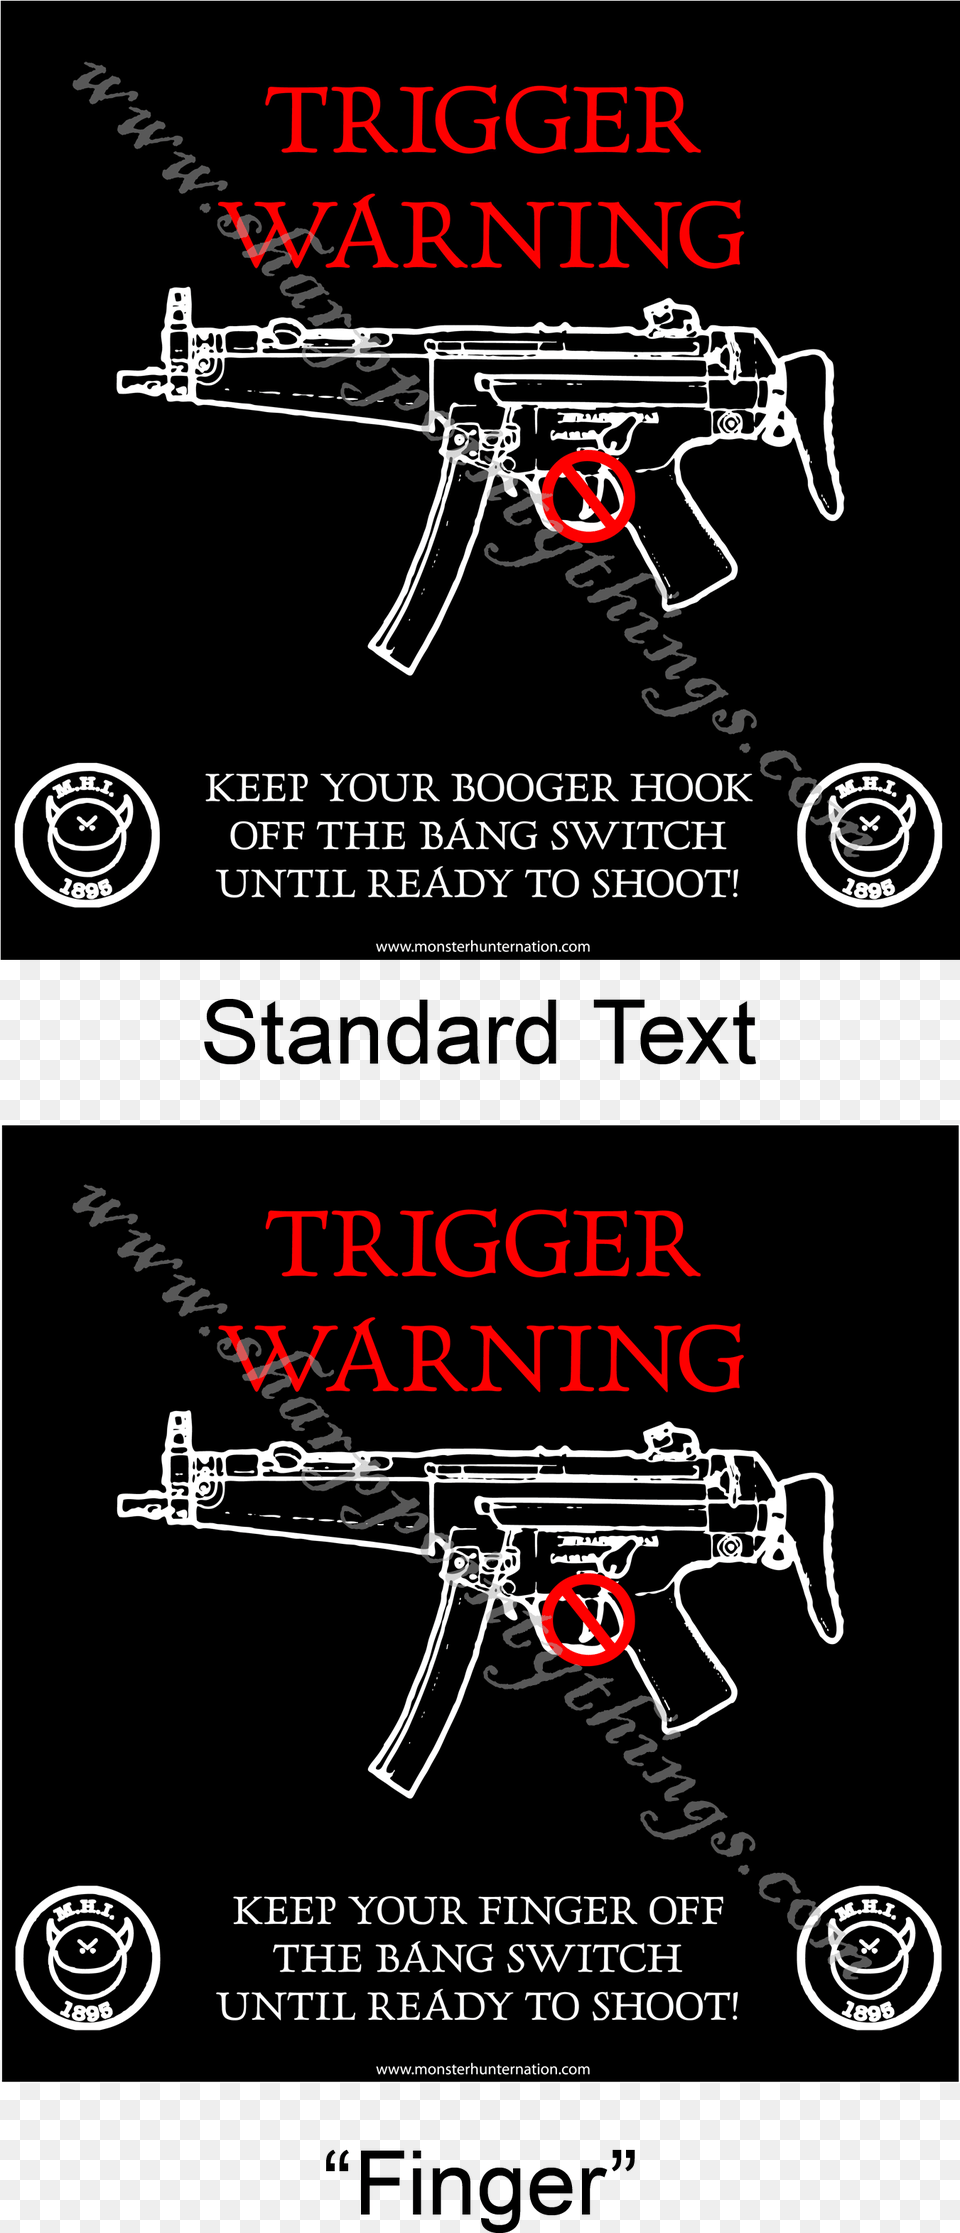 Trigger Warning Poster, Advertisement, Gun, Machine Gun, Weapon Png Image